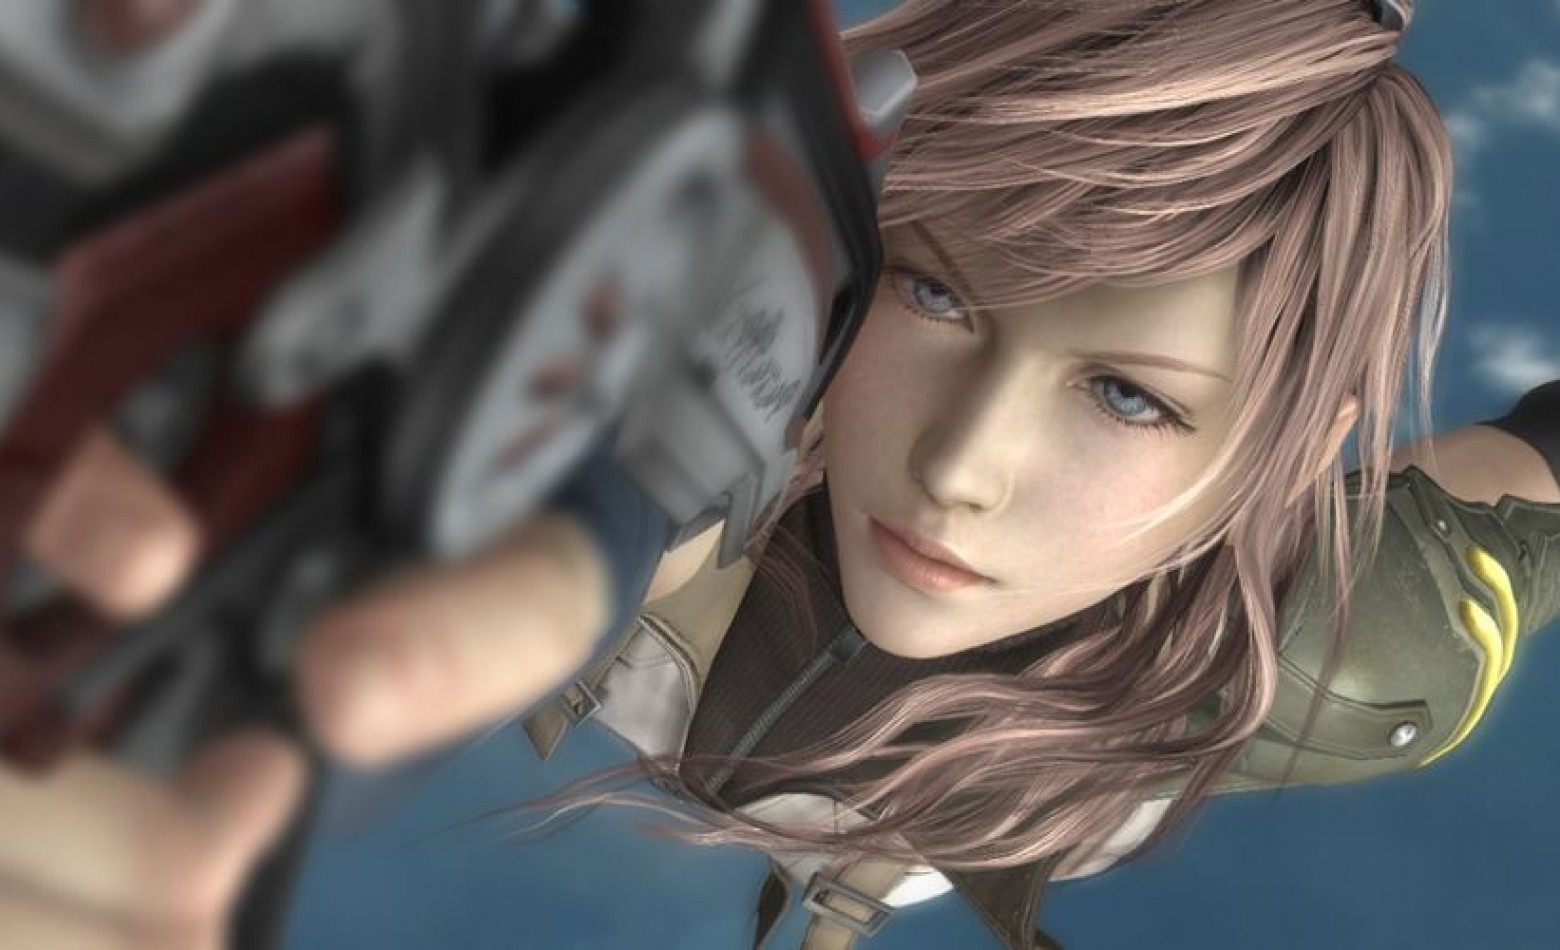 Square confirma o lançamento de Final Fantasy 13 para PC